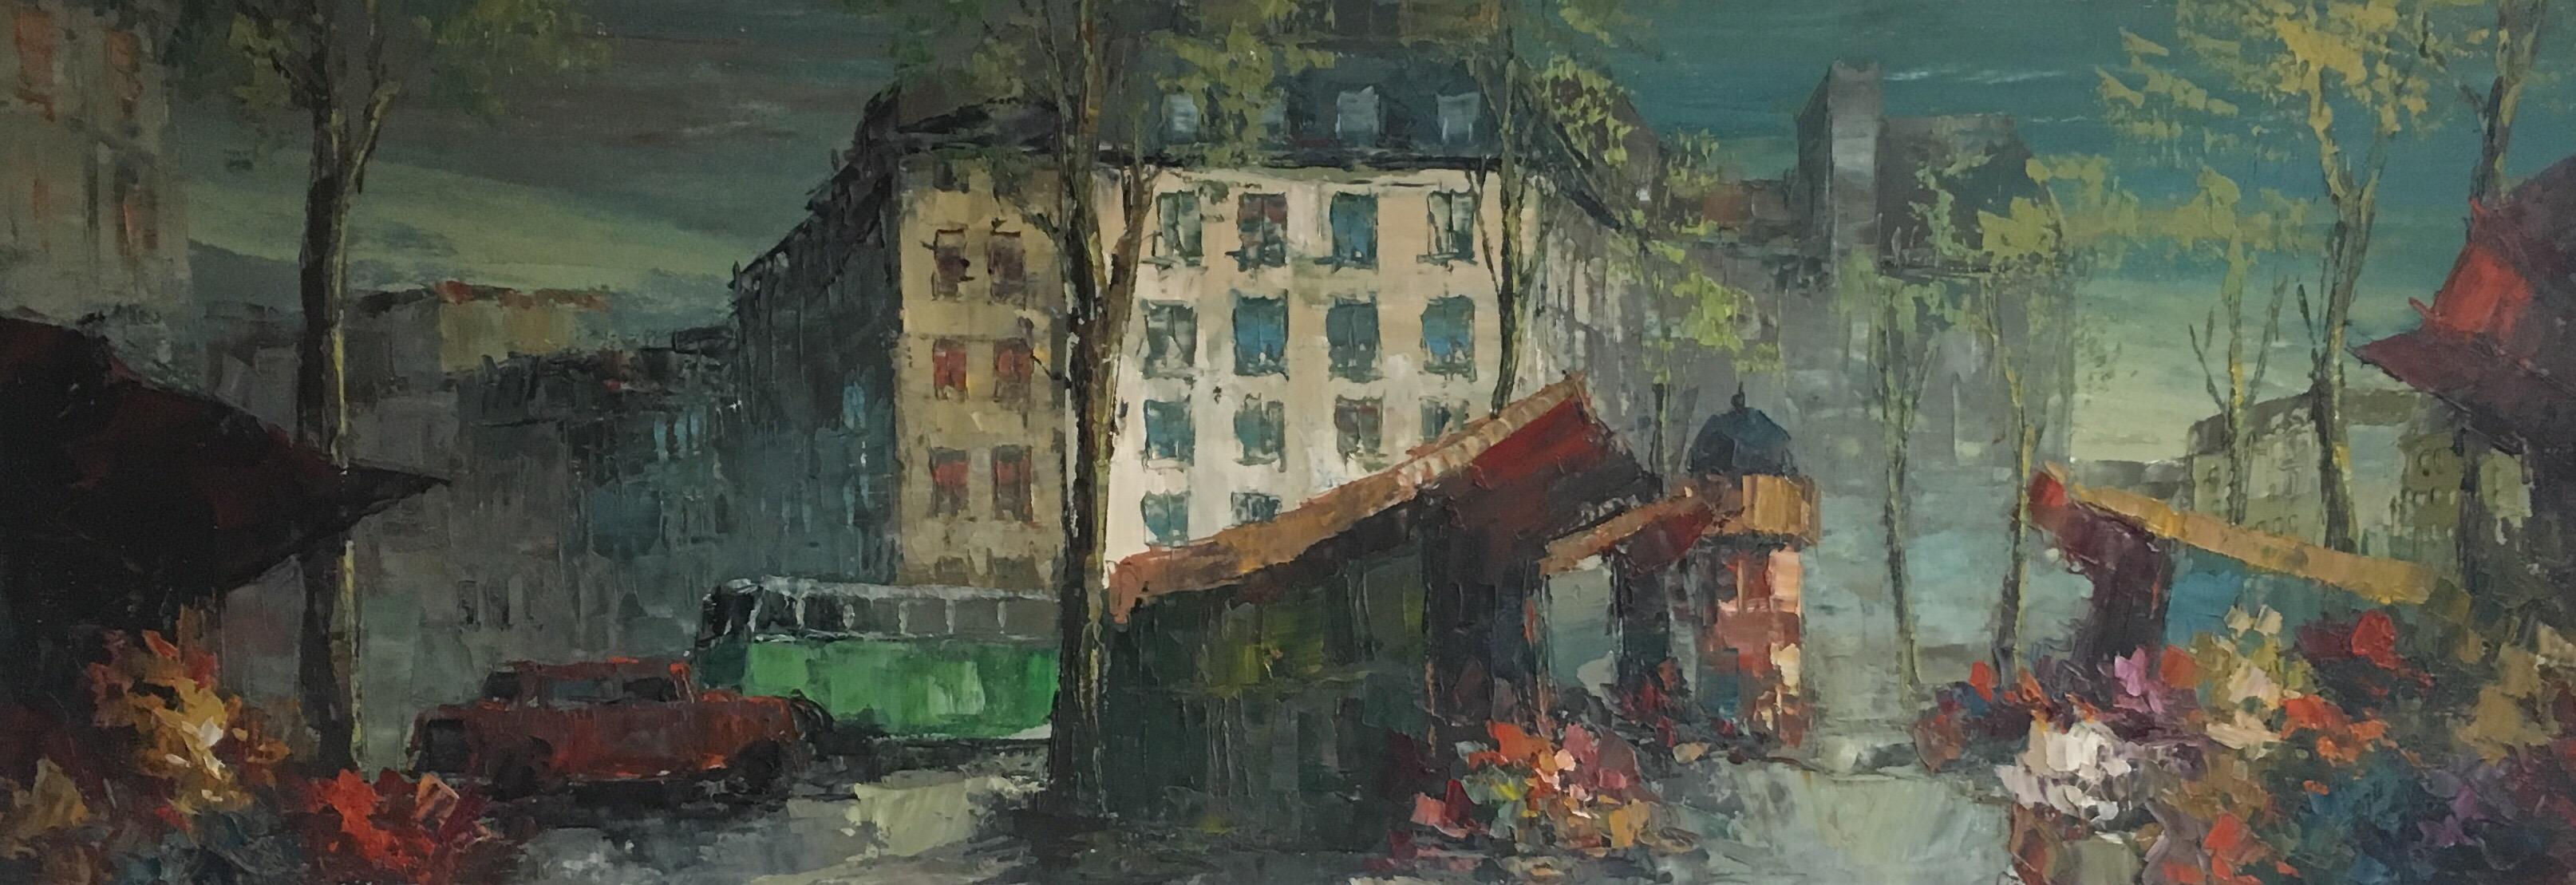 Unknown Landscape Painting - Parisian Flower Market, Large Impressionist Landscape, Oil Painting